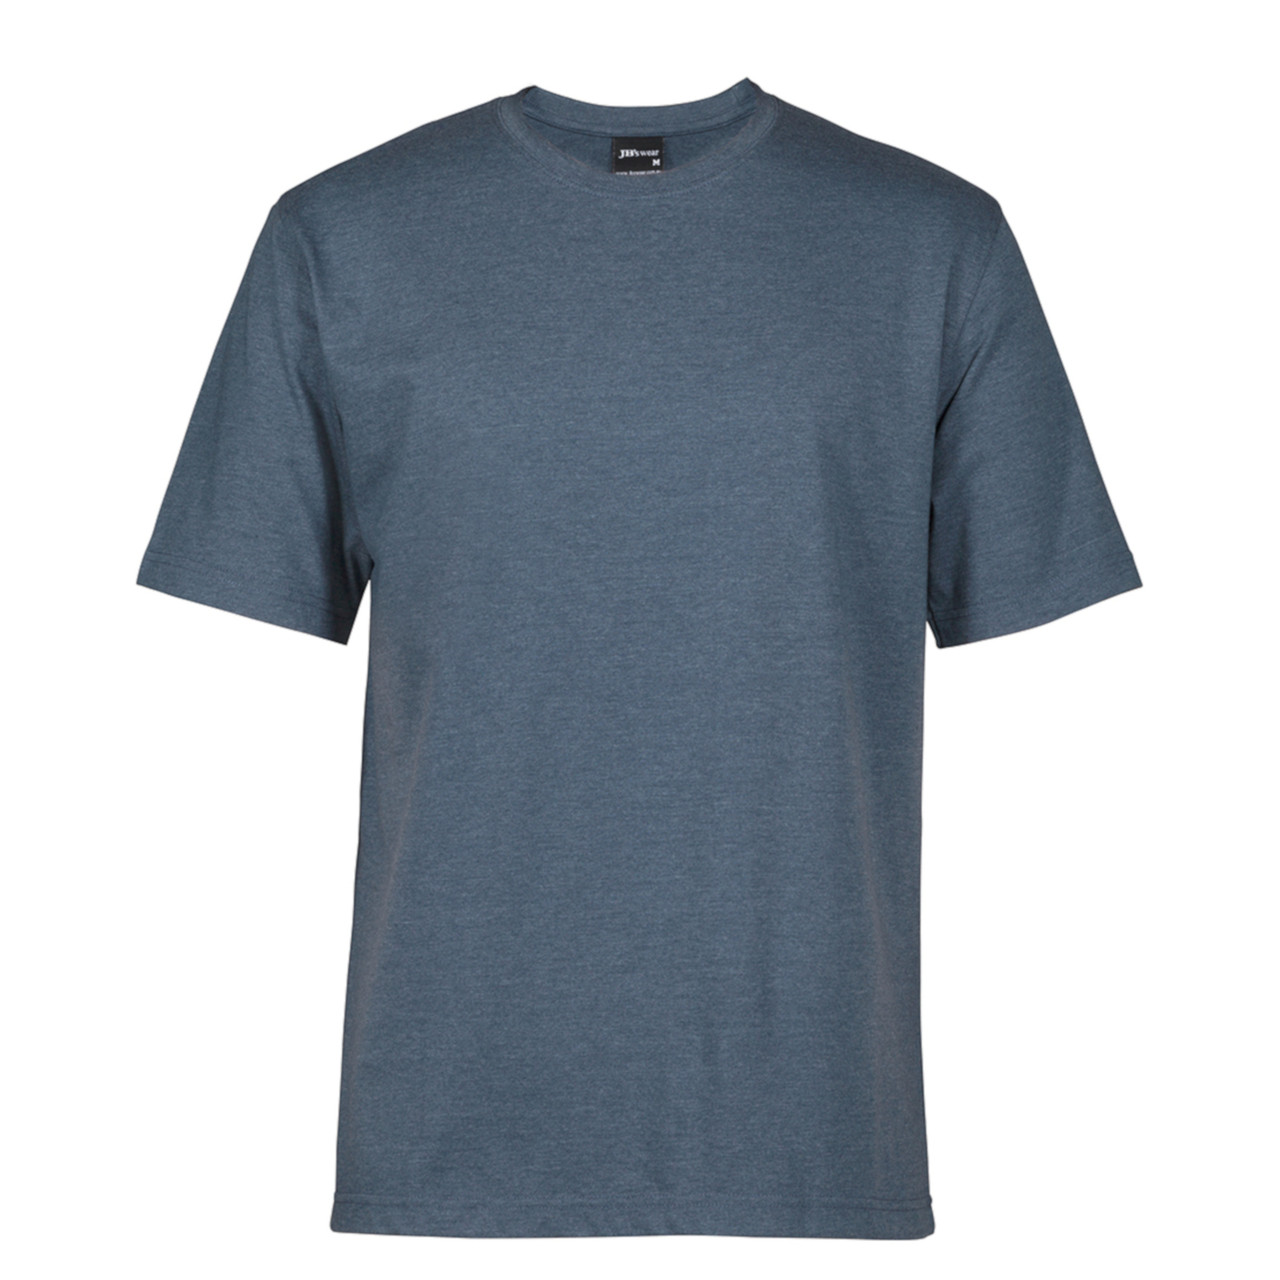 wholsale plain jersey cotton tshirt | crew neck | bulk buy discount online